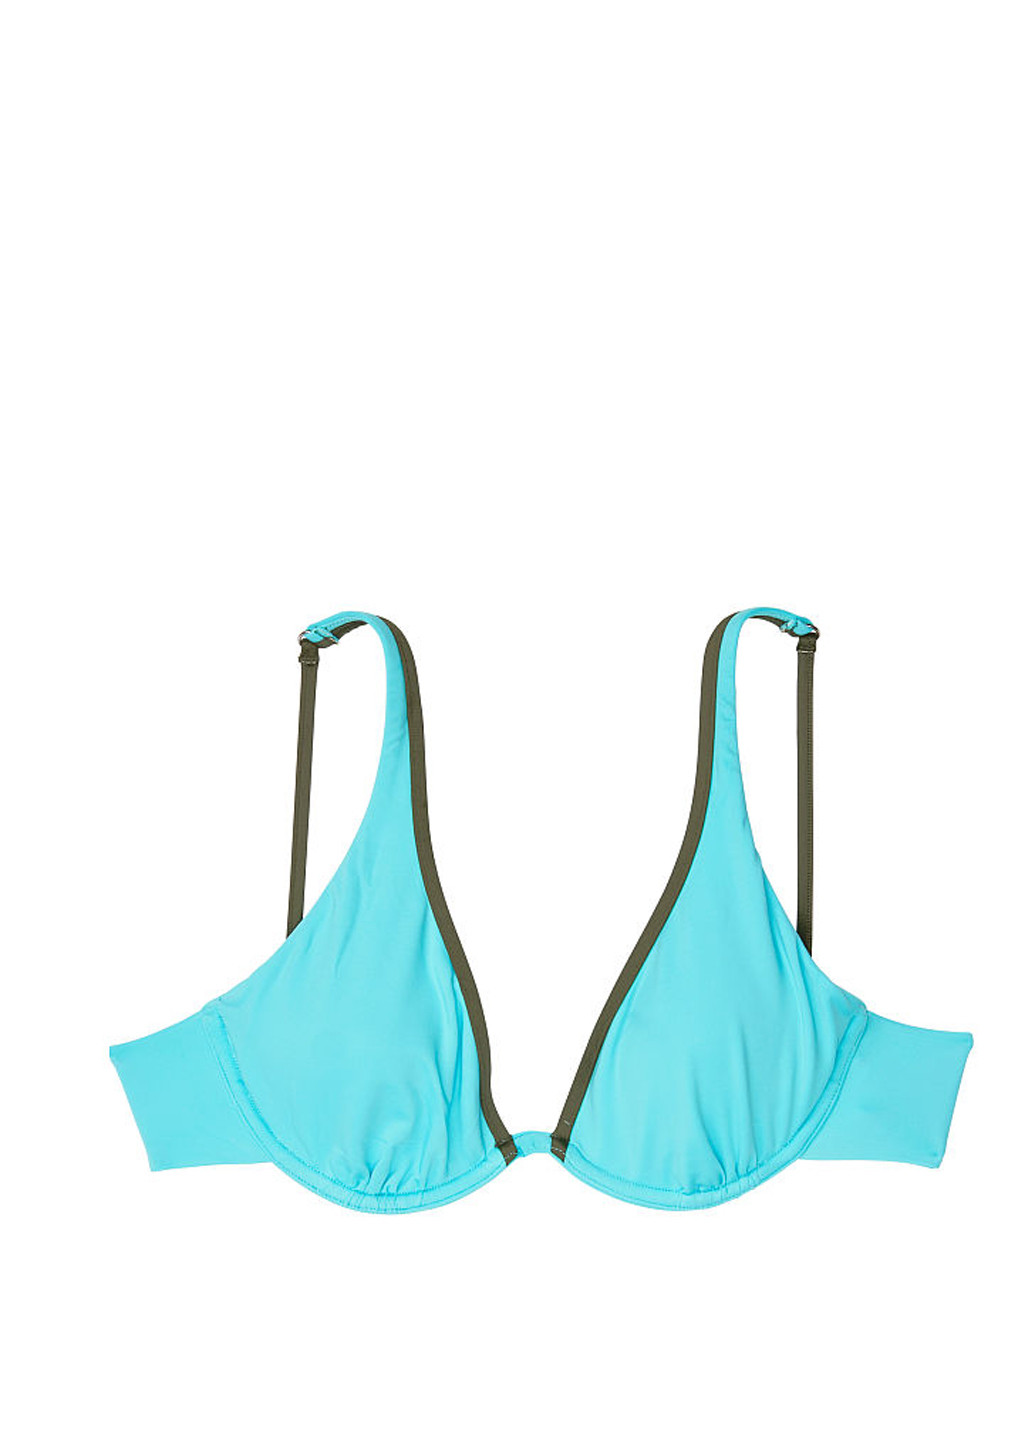 Светло-голубой летний купальник (лиф, трусы) раздельный Victoria's Secret